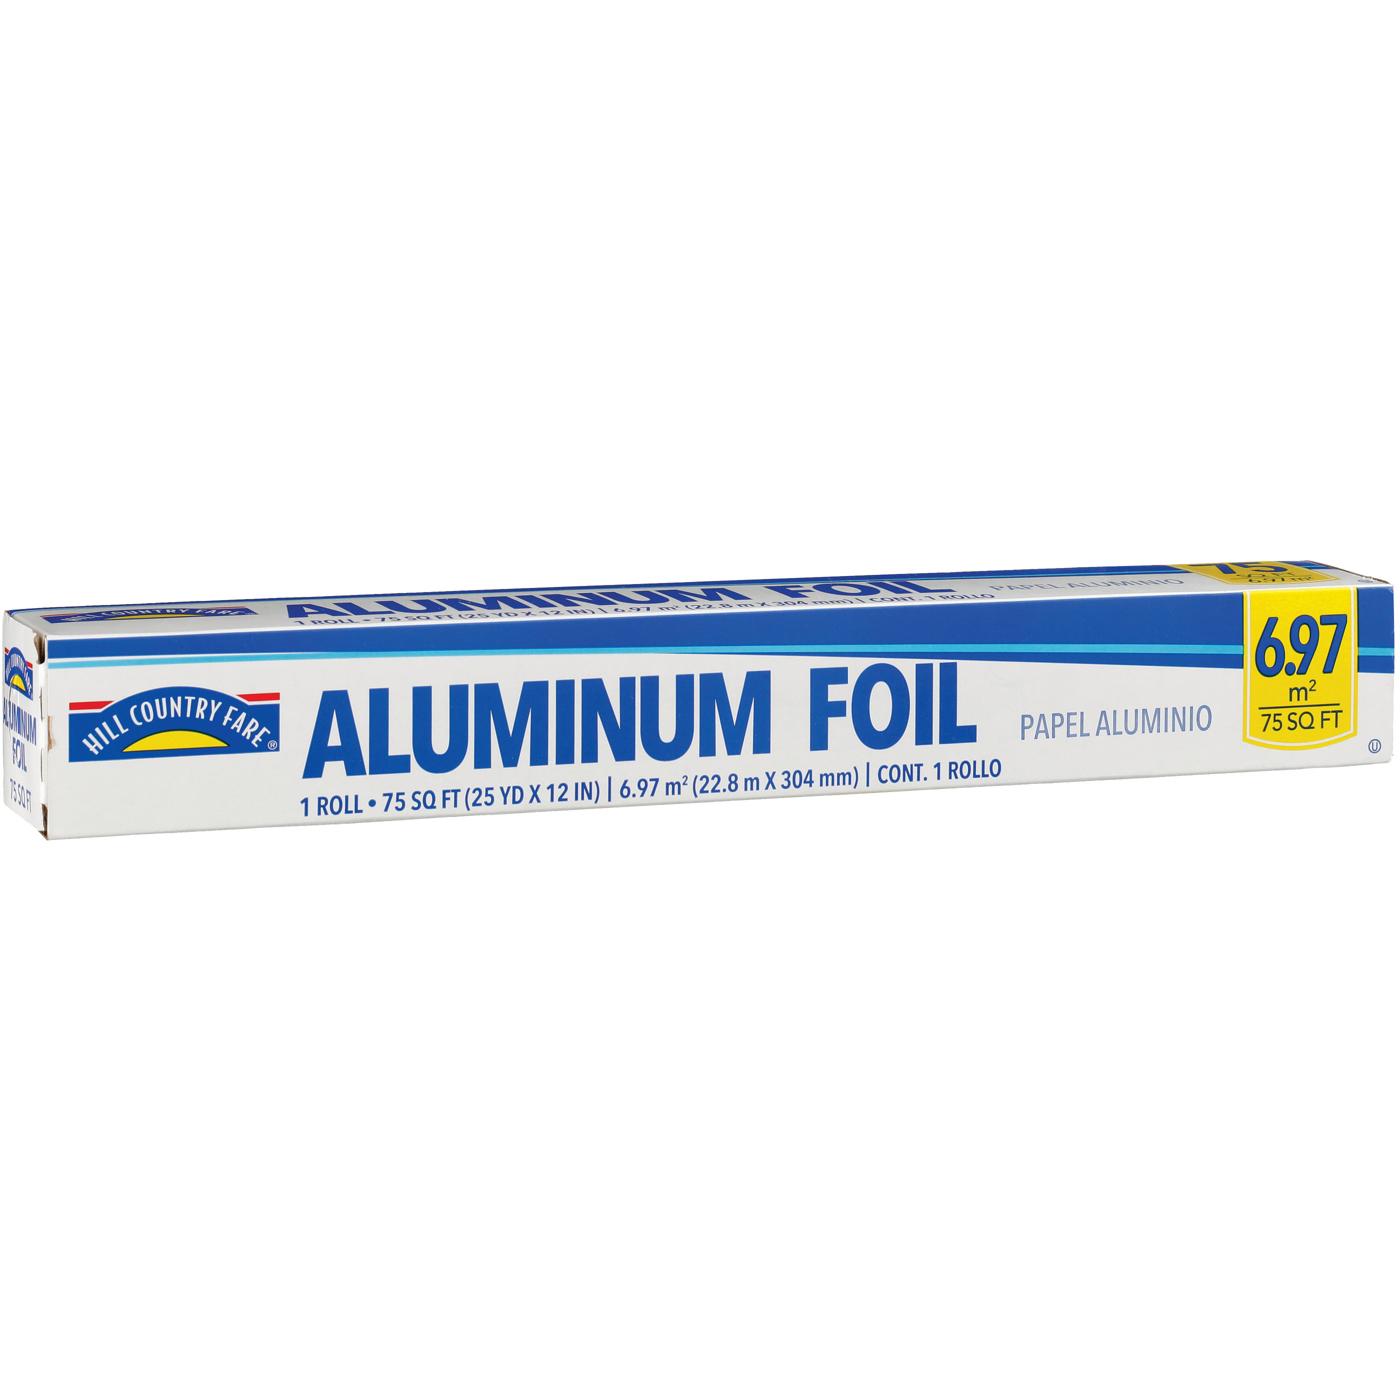 AHG Aluminium Foil Roll